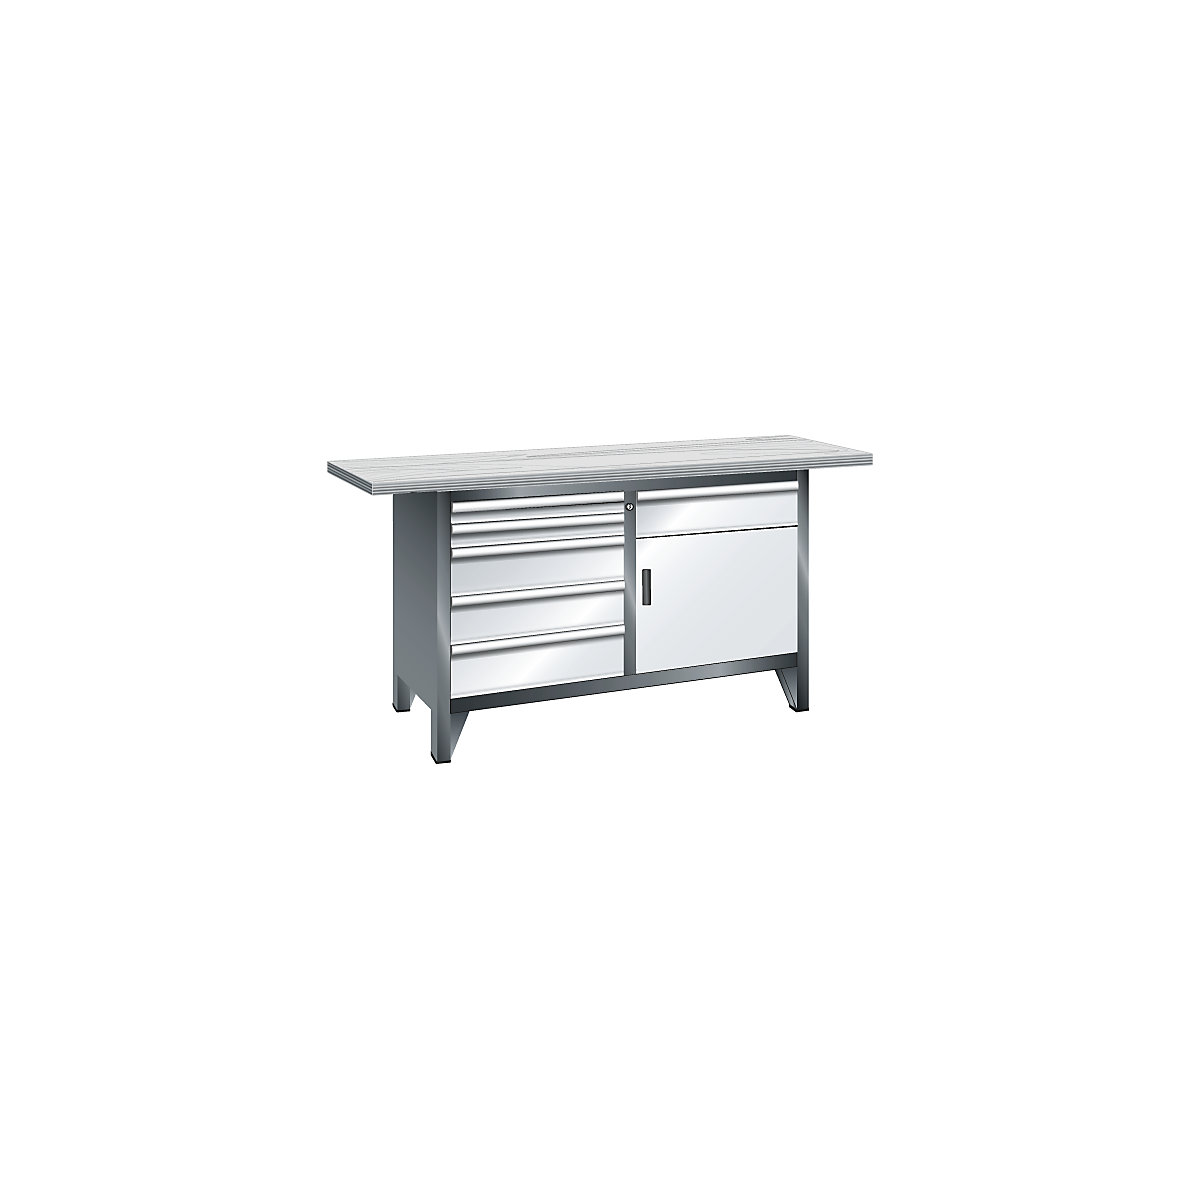 Workbench width 1500 mm, frame construction – LISTA, 1 shelf, 6 drawers, 1 door, body light grey, front light blue-7